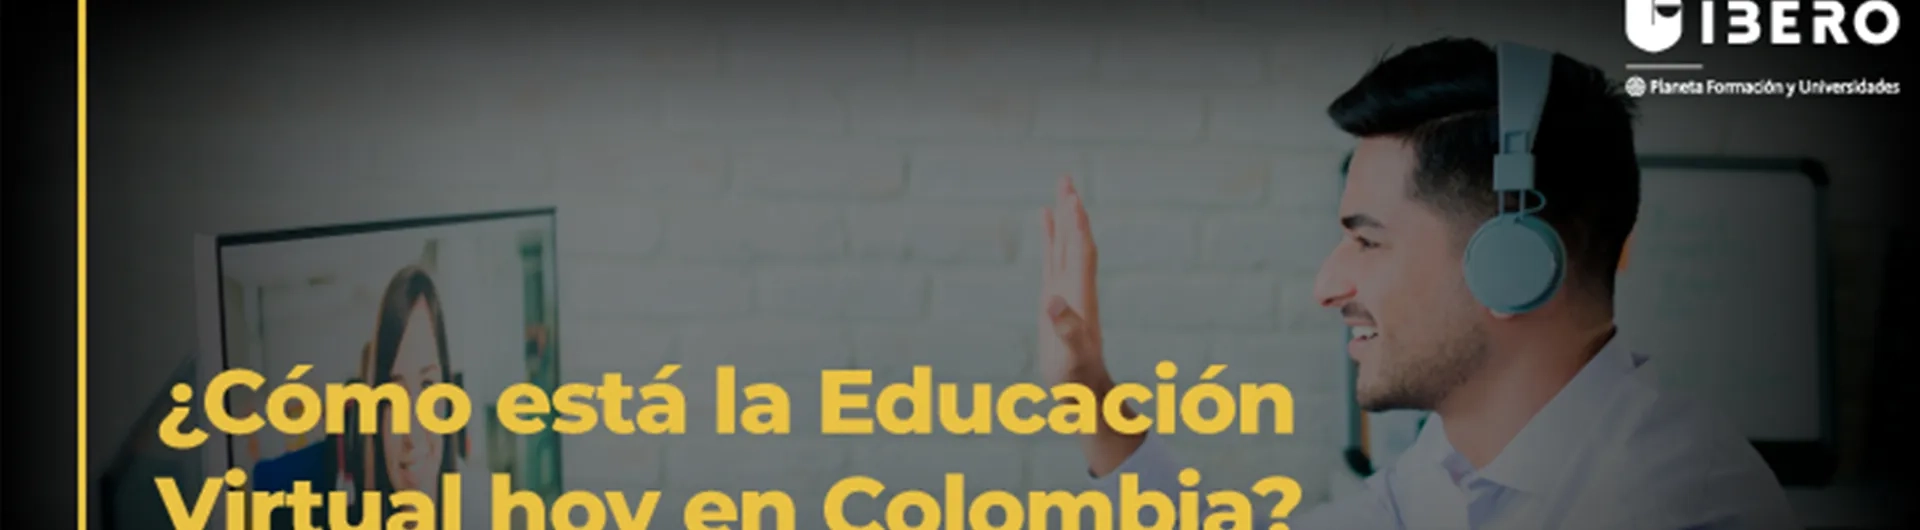 En colombia 2 de cada 10 universitarios se forman en modalidad virtual